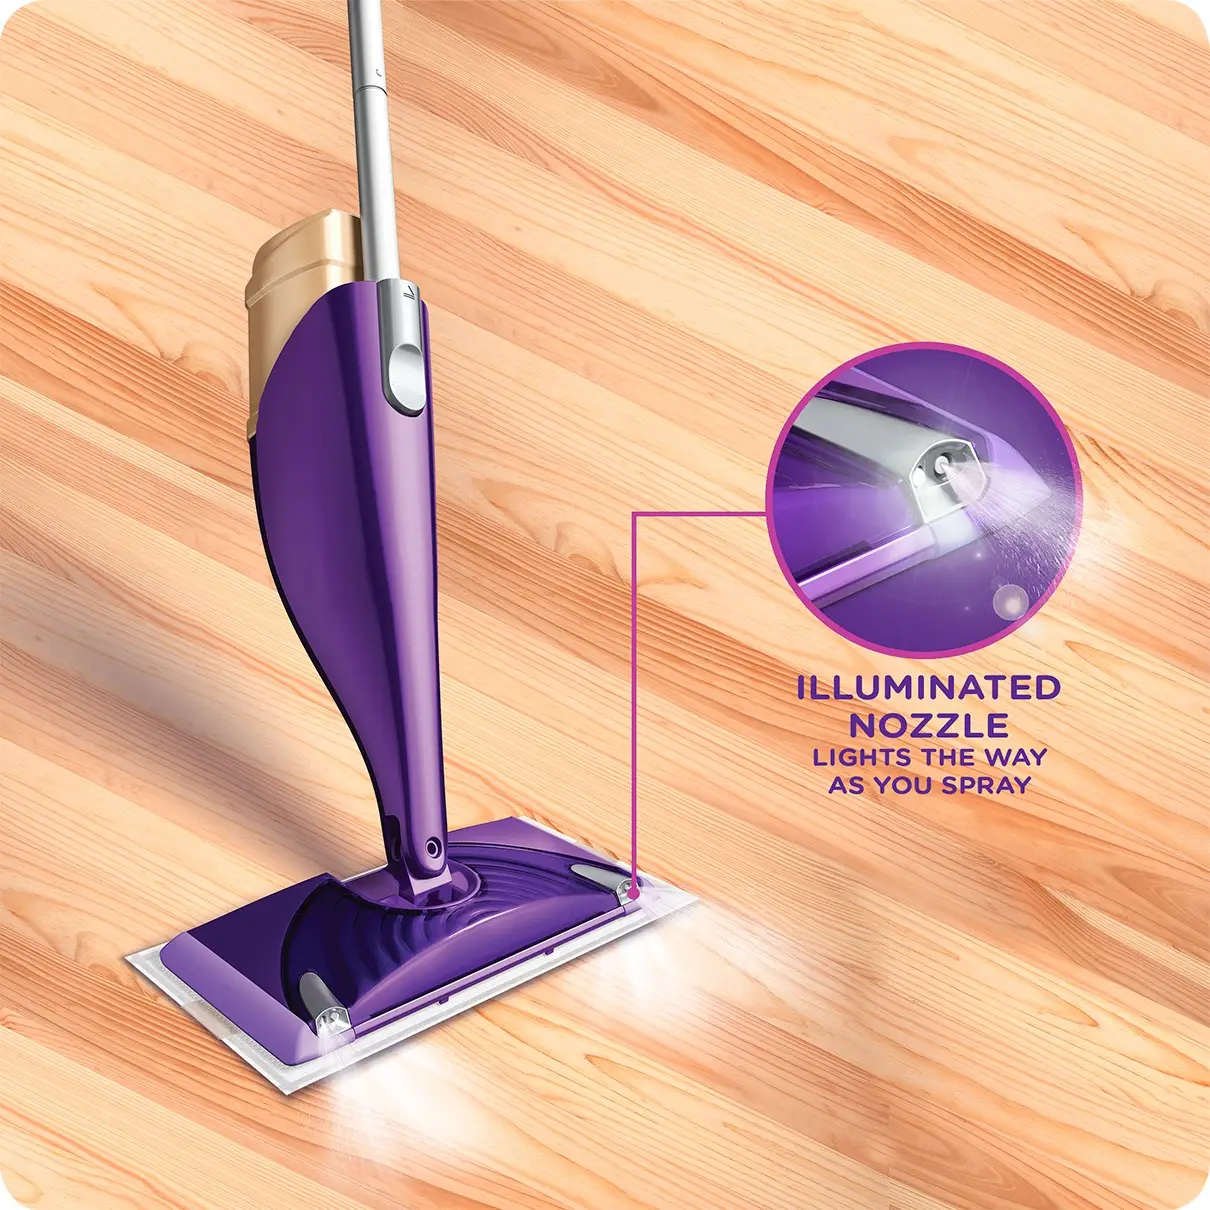 Buy Swiffer WetJet Floor Spray Mop Starter Kit